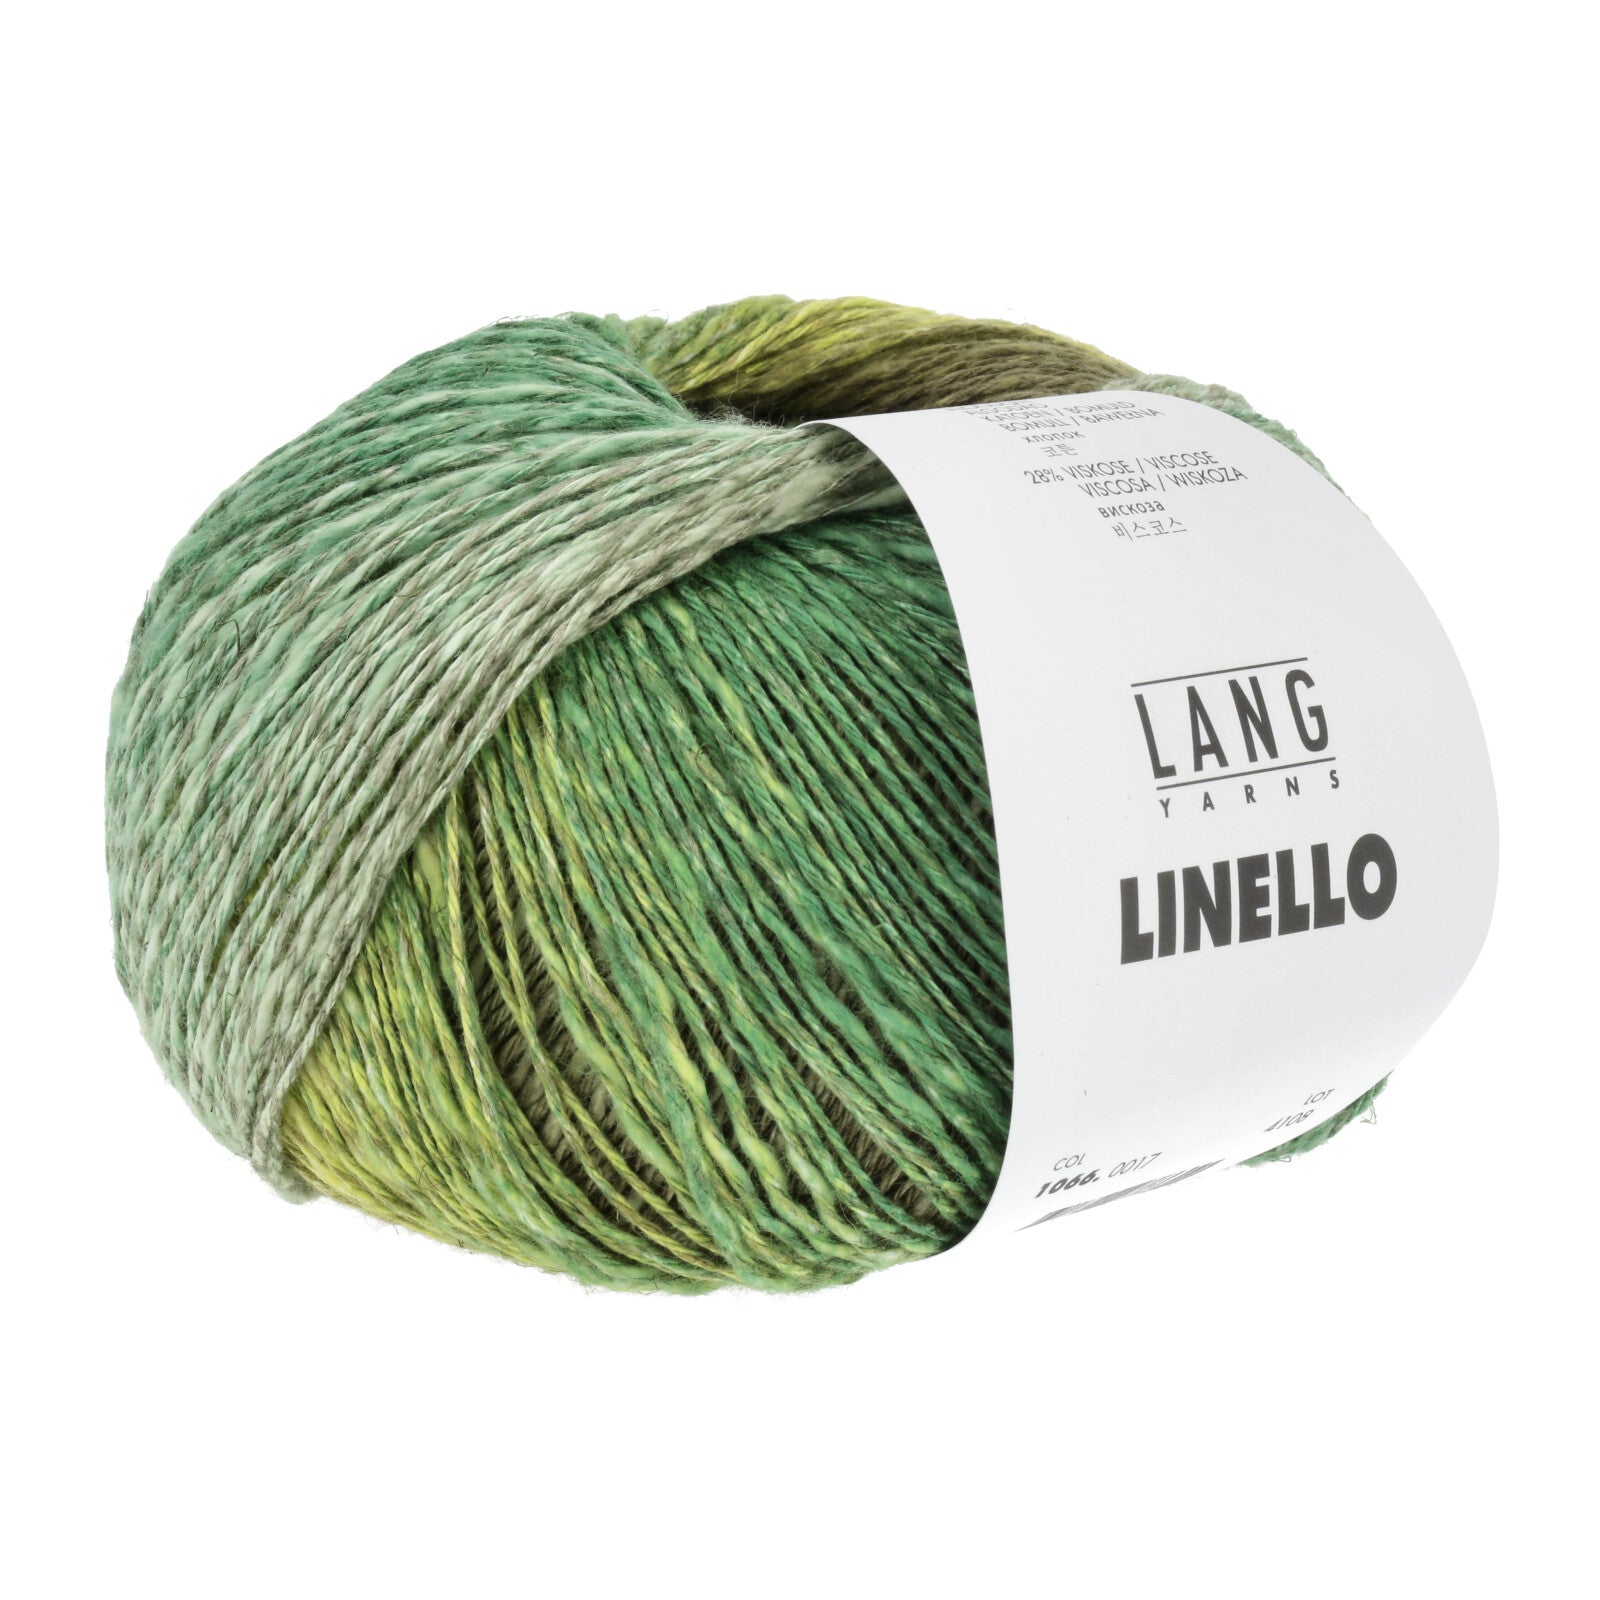 Linello Scarf Kit